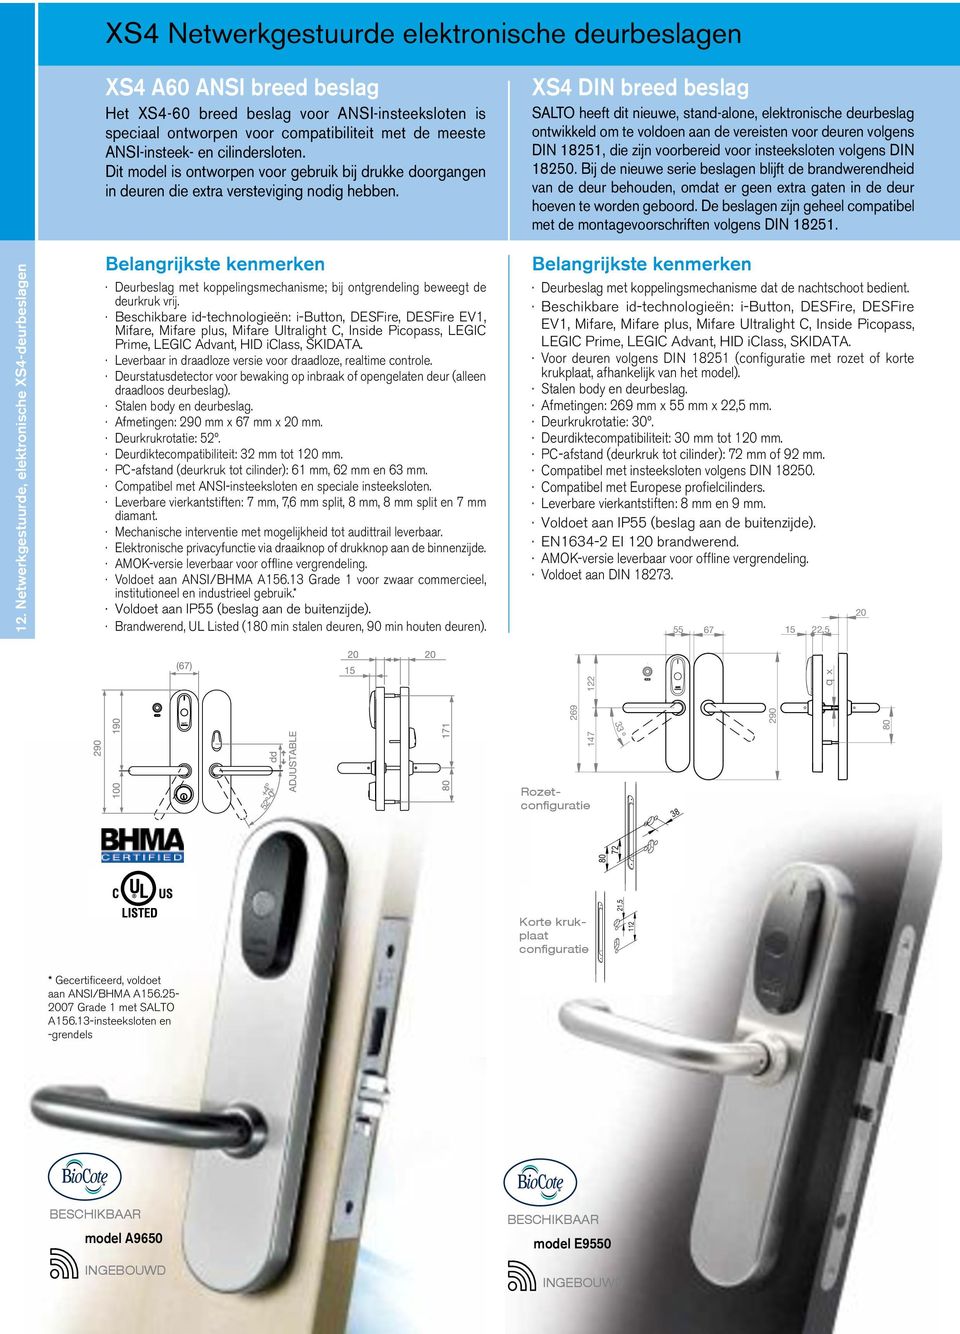 XS4 DIN breed beslag SALTO heeft dit nieuwe, stand-alone, elektronische deurbeslag ontwikkeld om te voldoen aan de vereisten voor deuren volgens DIN 18251, die zijn voorbereid voor insteeksloten